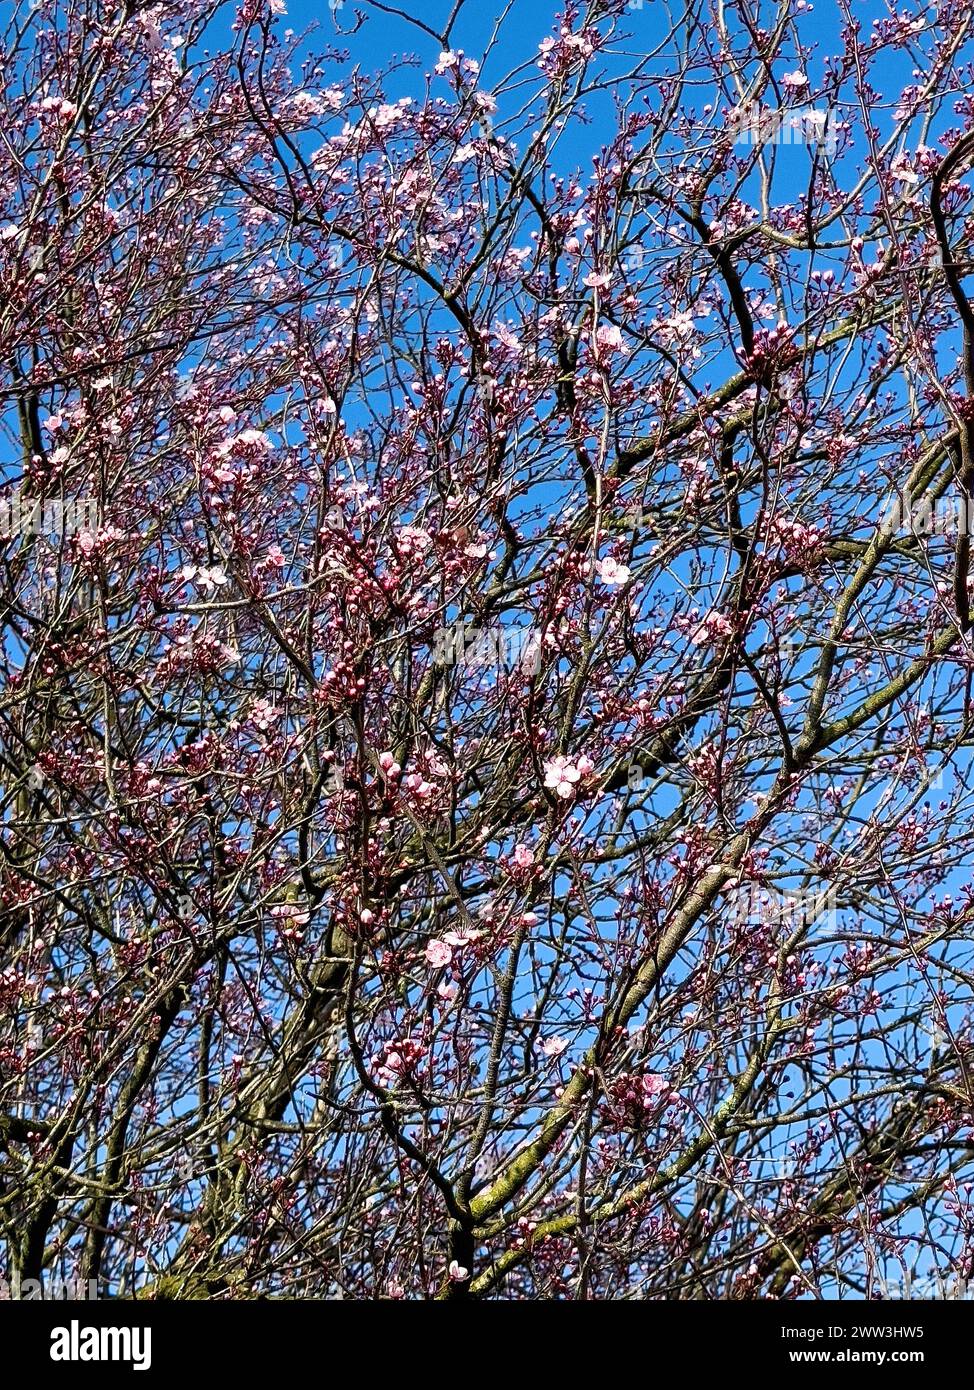 Grand arbuste arbuste myrobolane (Prunus cerasifera) germes de prune de sang Nigra tosa fleurit au début du printemps, derrière Blue Sky, Allemagne Banque D'Images